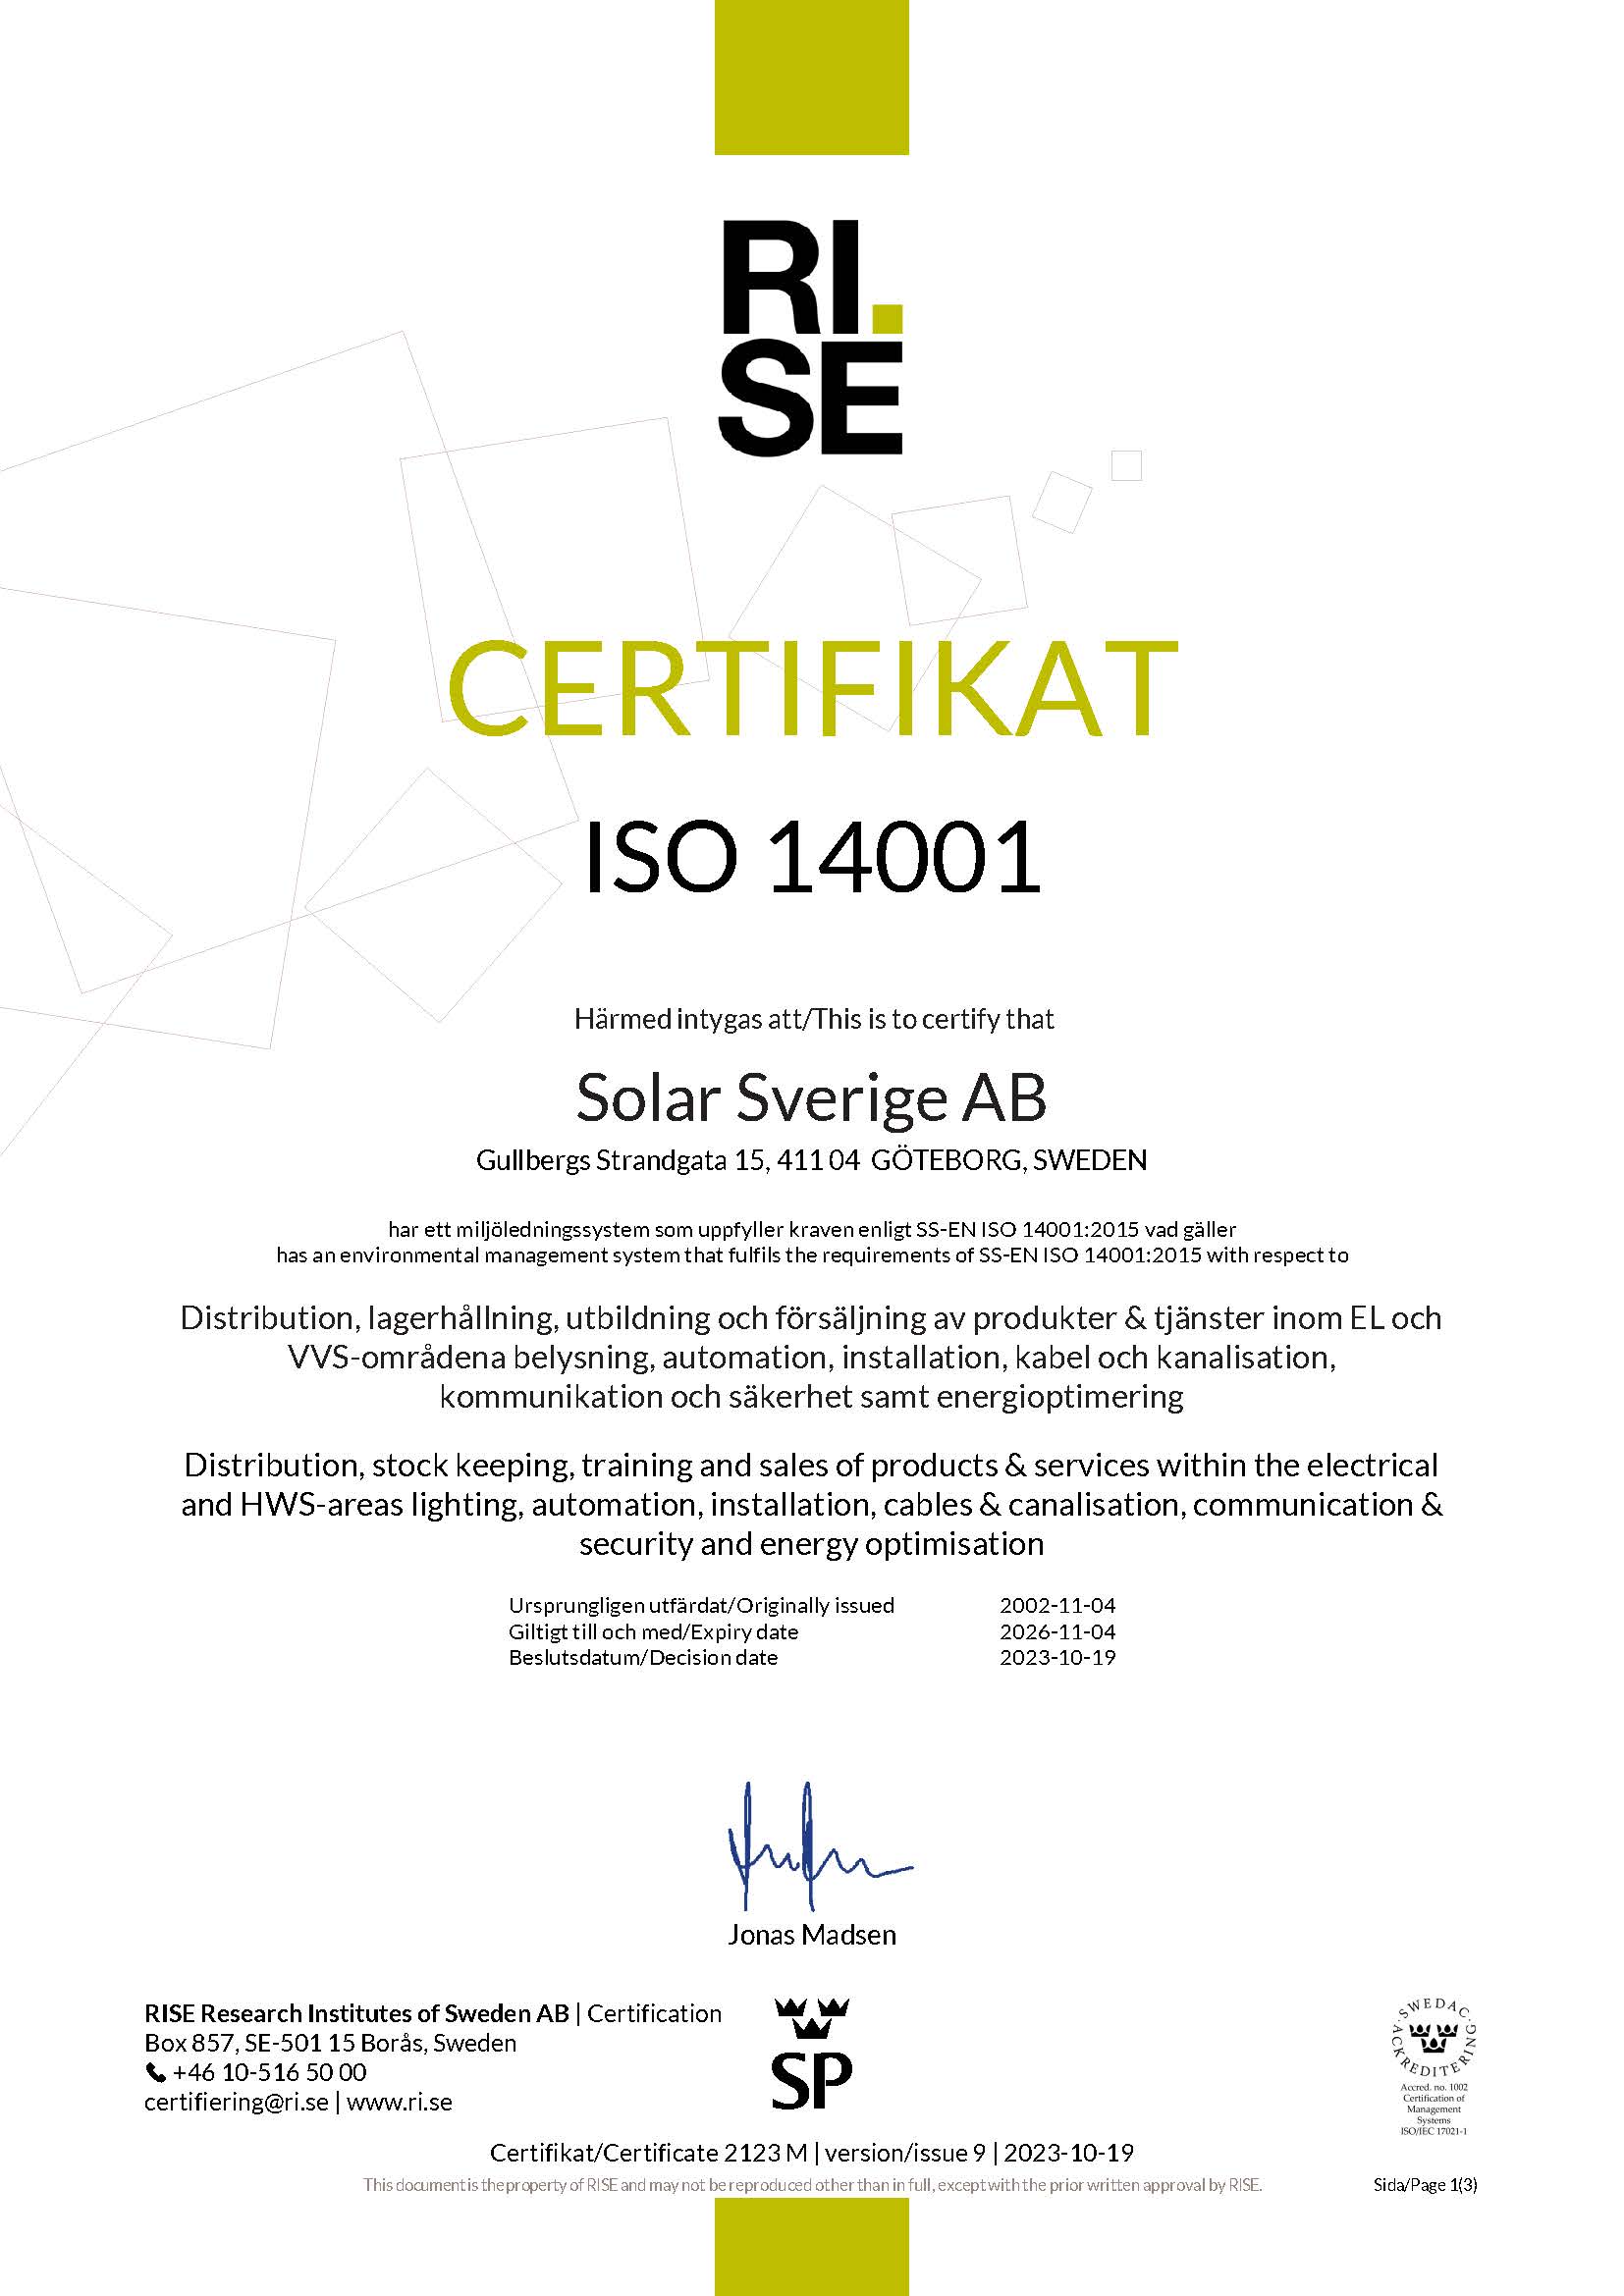 Miljö Certifikat 140012015 (002)_Page_1.jpg